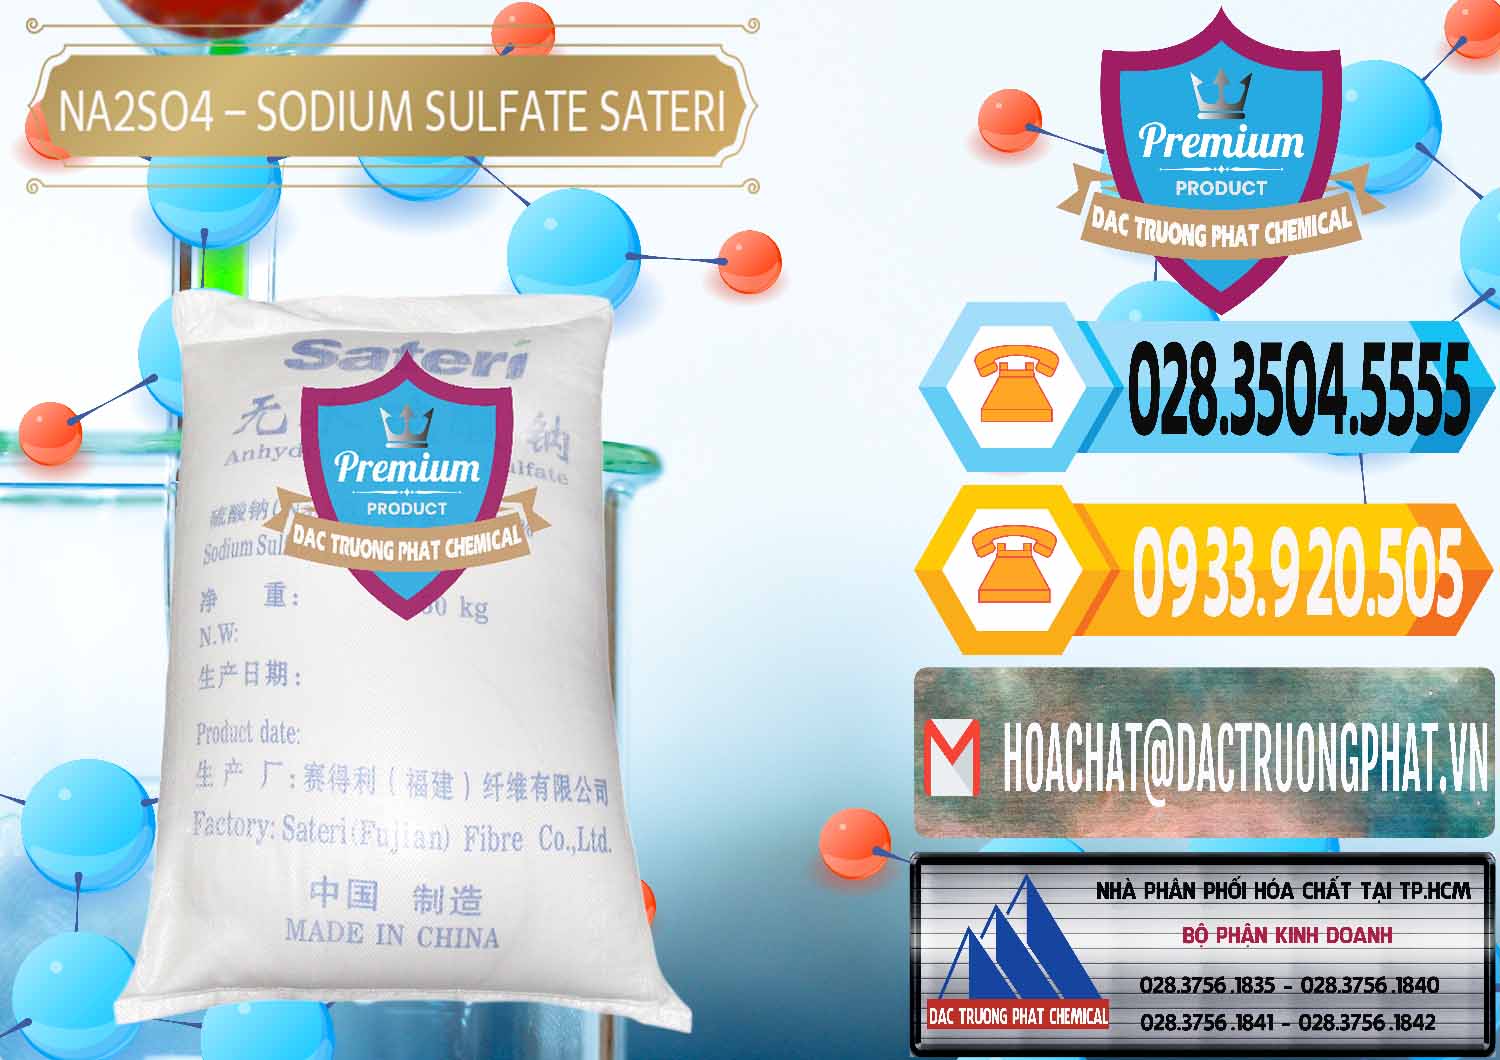 Bán và cung ứng Sodium Sulphate - Muối Sunfat Na2SO4 Sateri Trung Quốc China - 0100 - Nơi cung cấp ( phân phối ) hóa chất tại TP.HCM - hoachattayrua.net